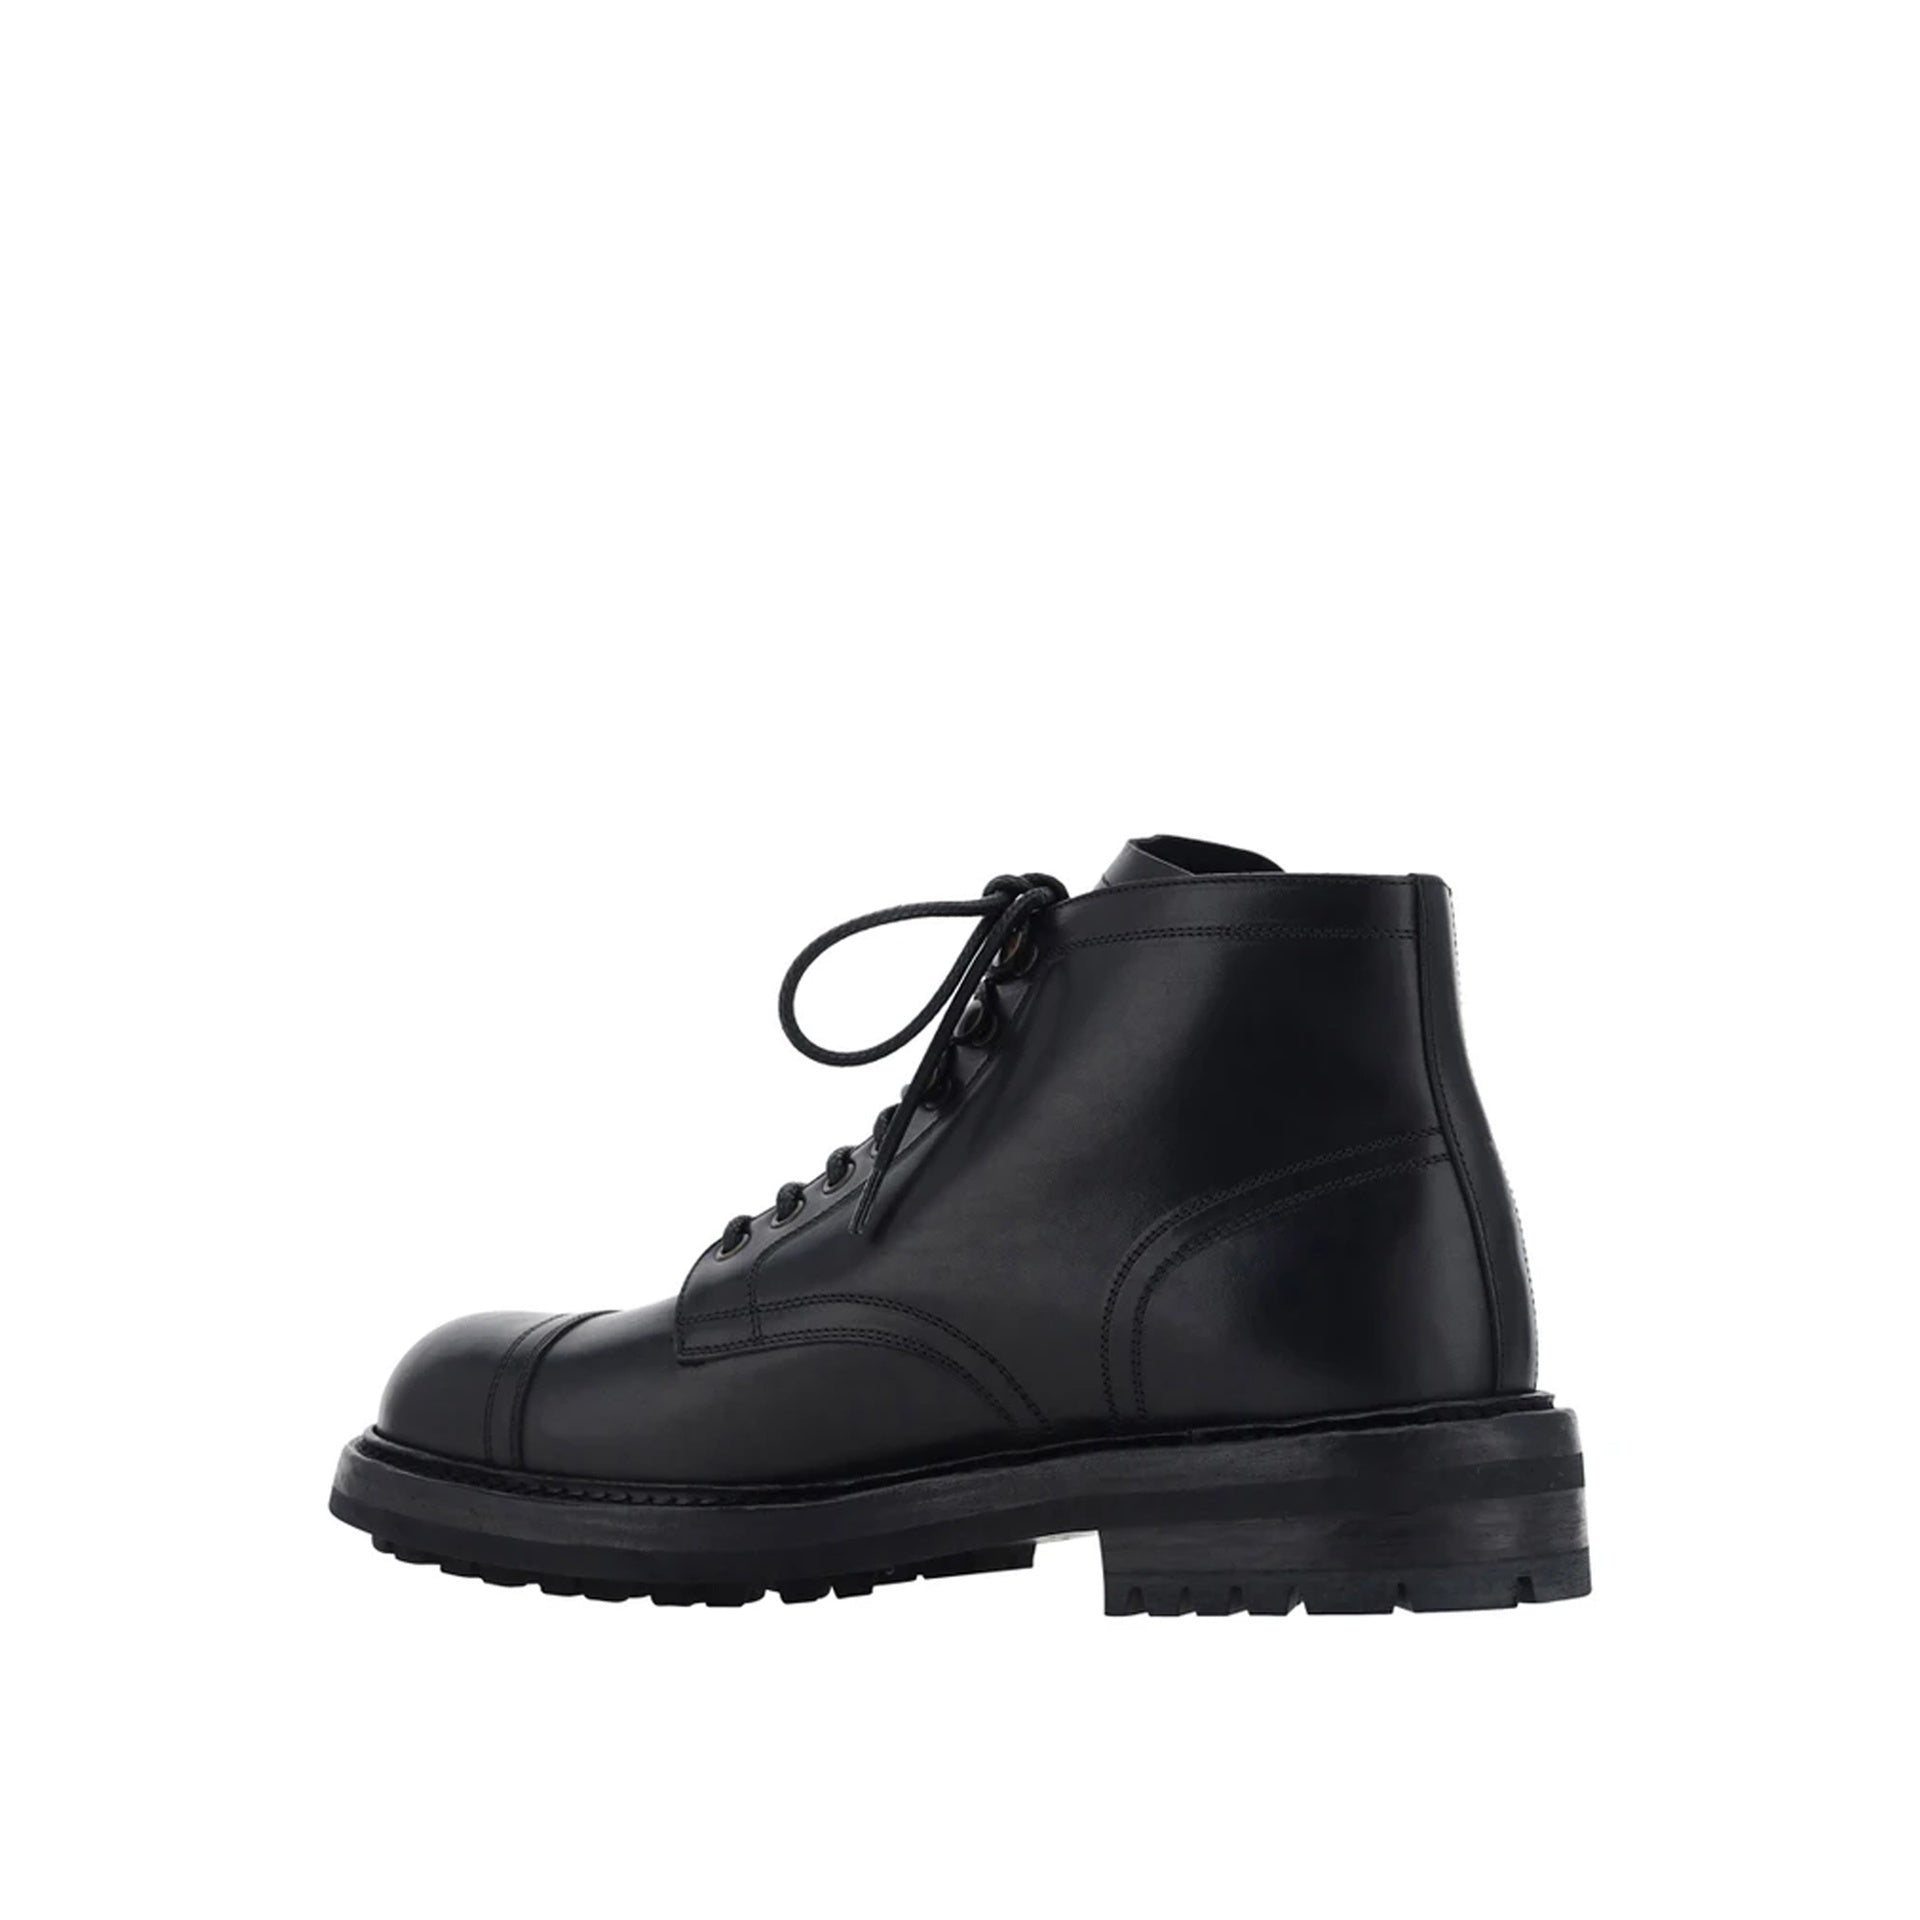 DOLCE___GABBANA_Dolce___Gabbana_Lace-Up_Leather_Boots_A60316AO018_80999_Black_3.jpg